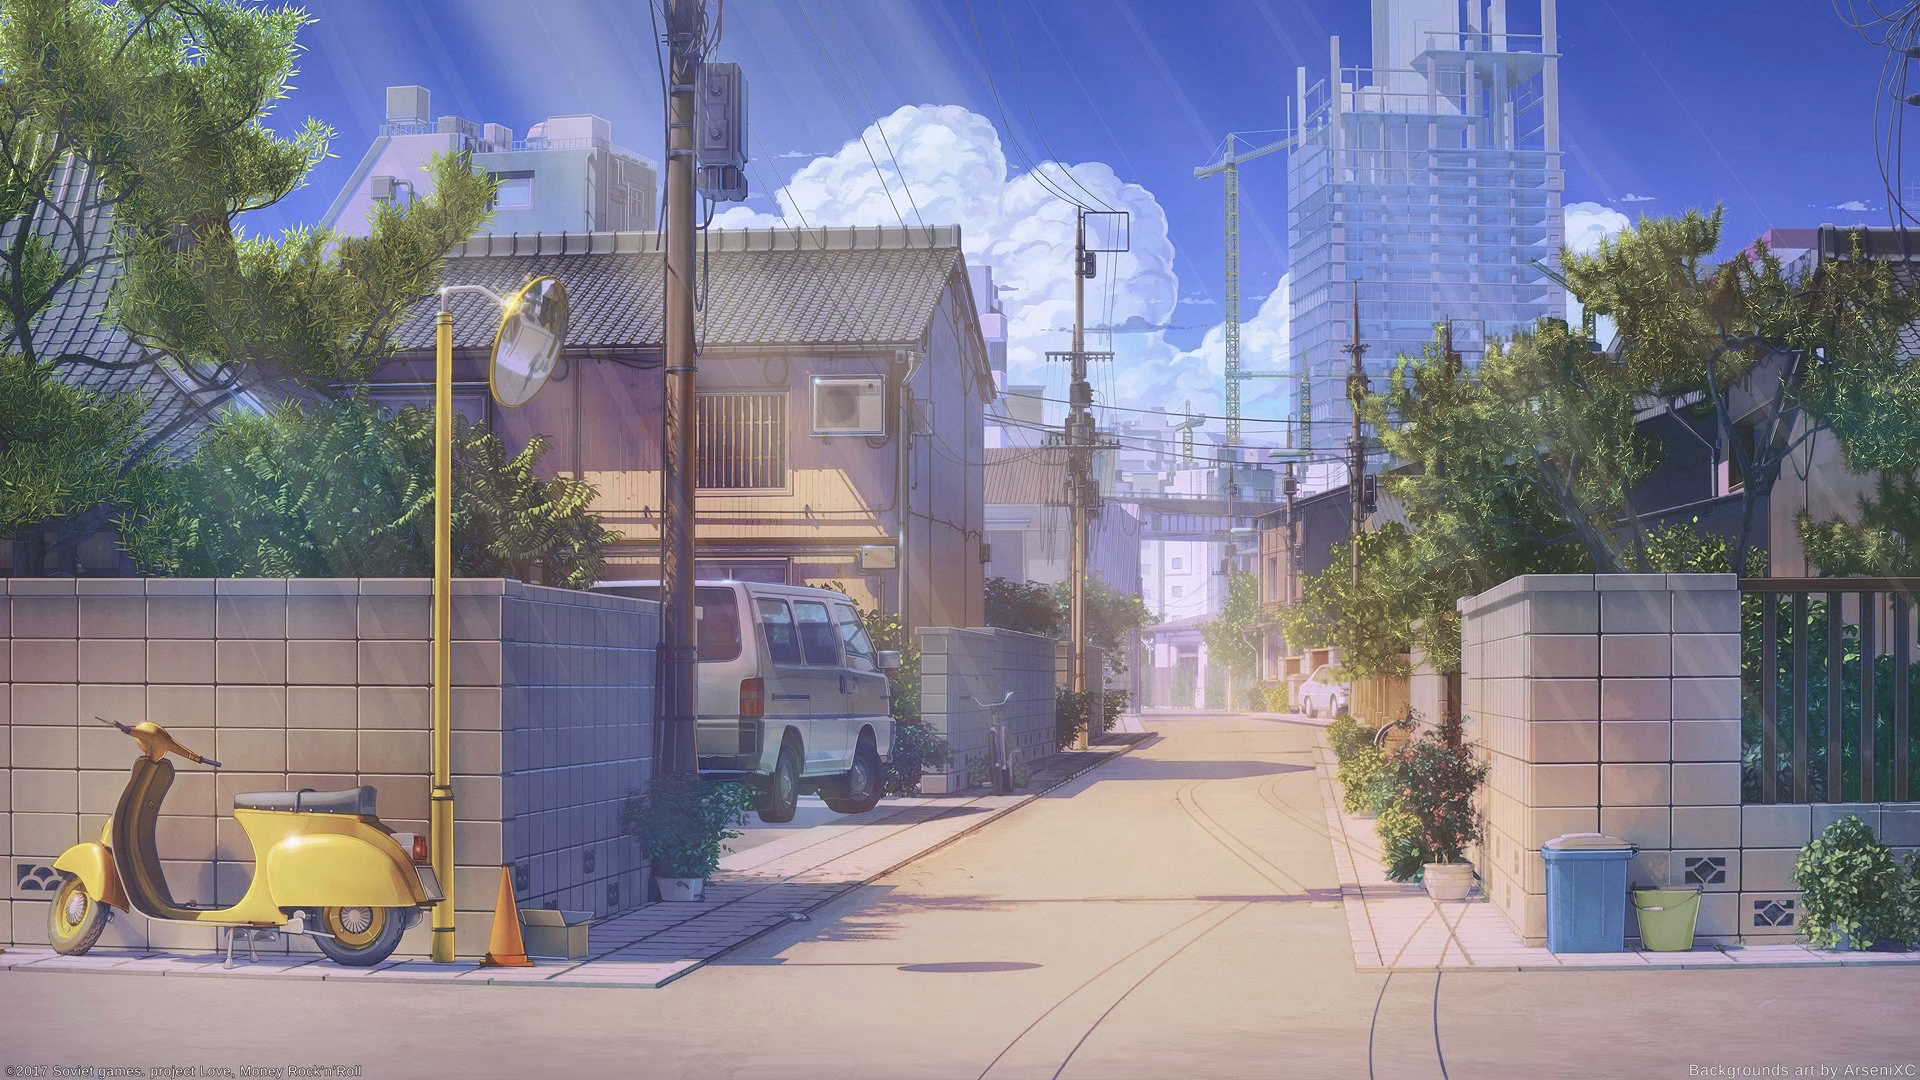 日本动漫街道风景动态壁纸